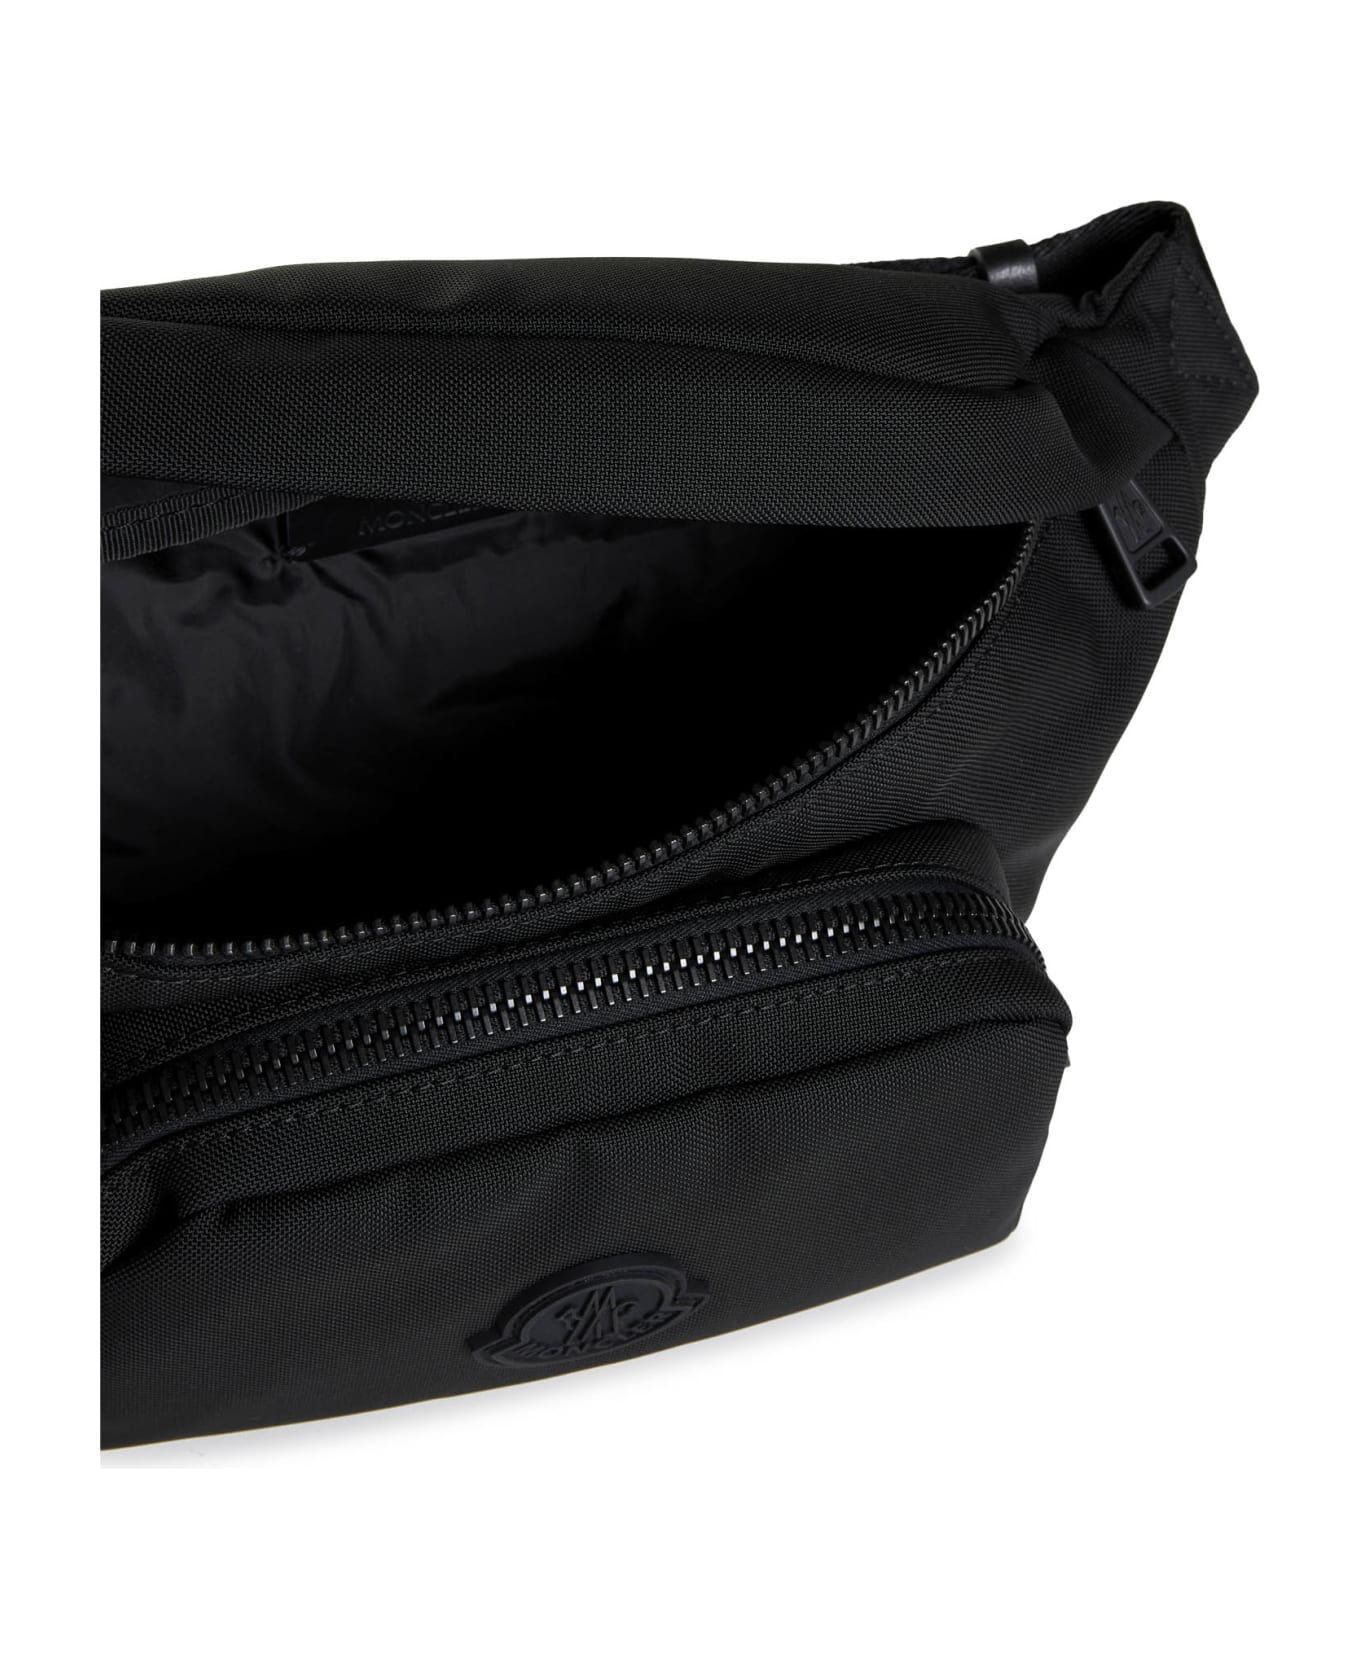 Moncler Shoulder Bag - Black